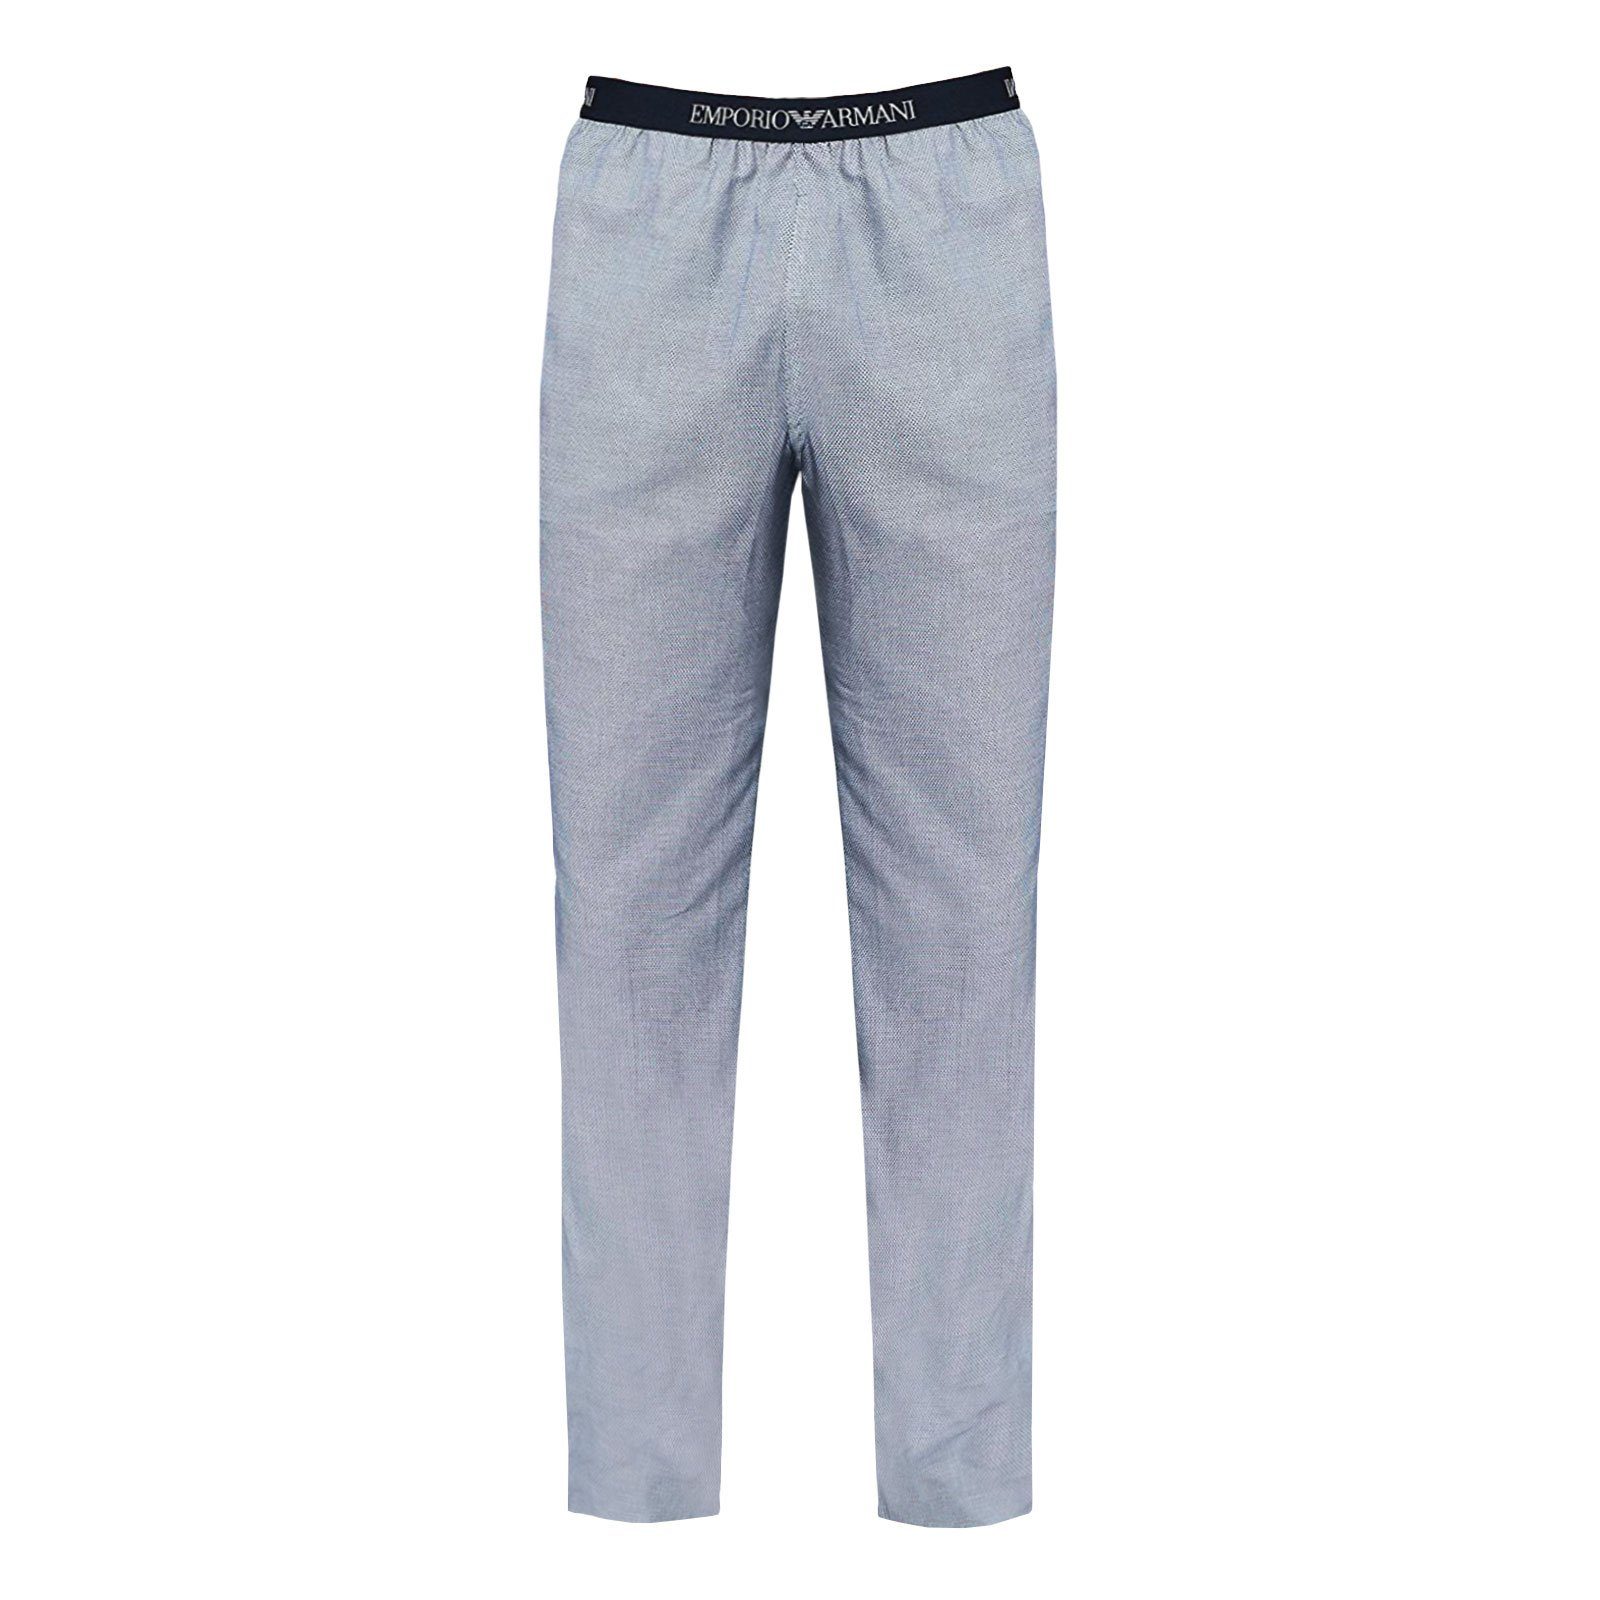 Emporio Armani Pyjamahose Loungewear Schlafhose mit umlaufendem Markenschriftzug auf Komfortbund 76610 white rombus / marine